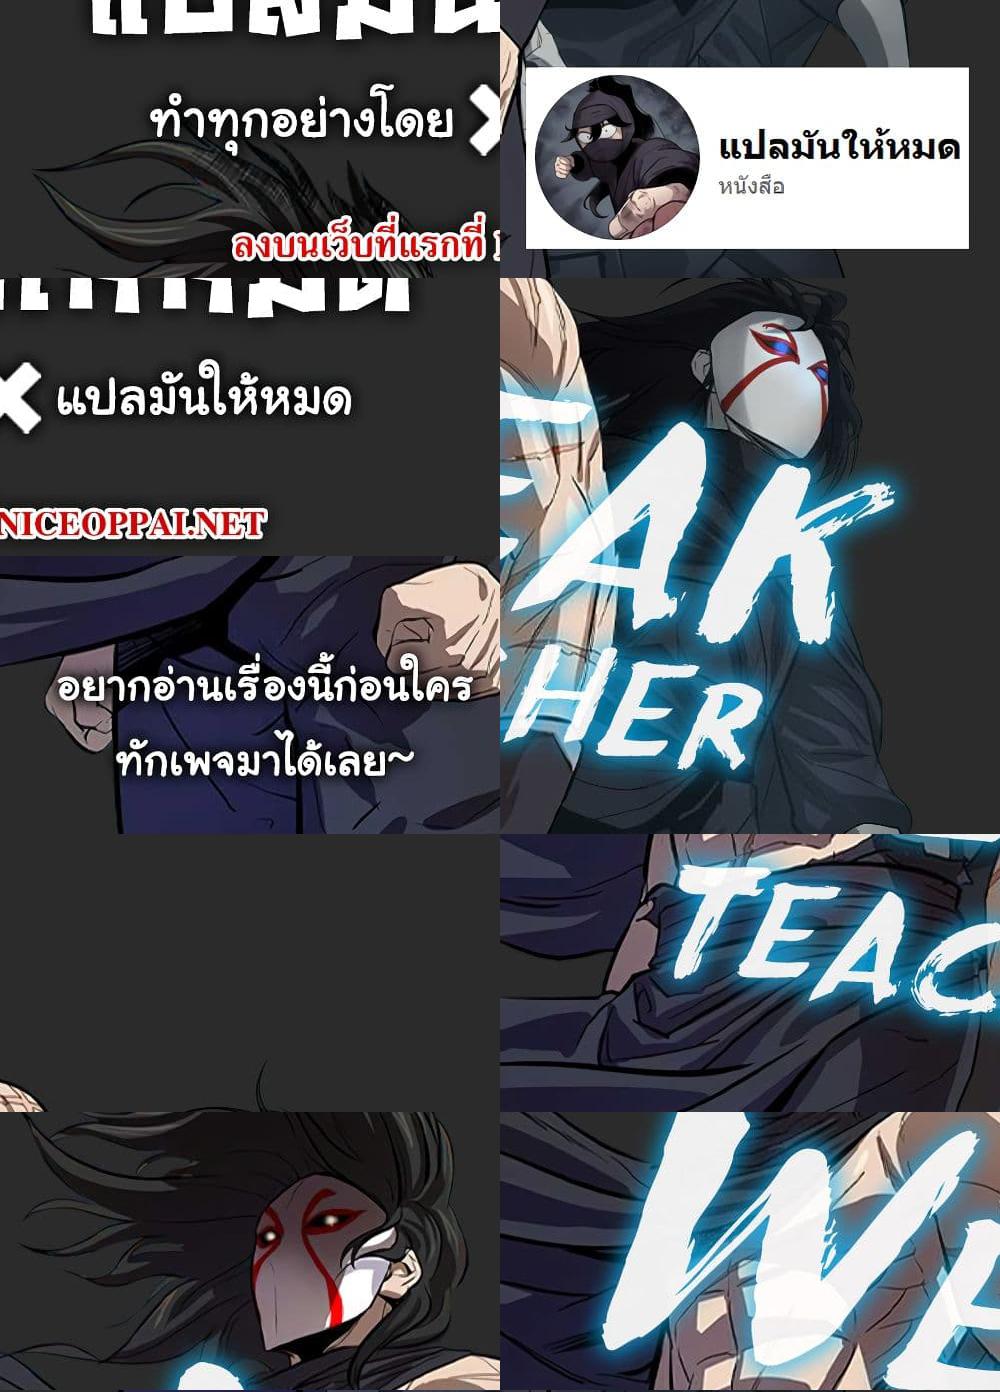 Weak Teacher - 12 - 1